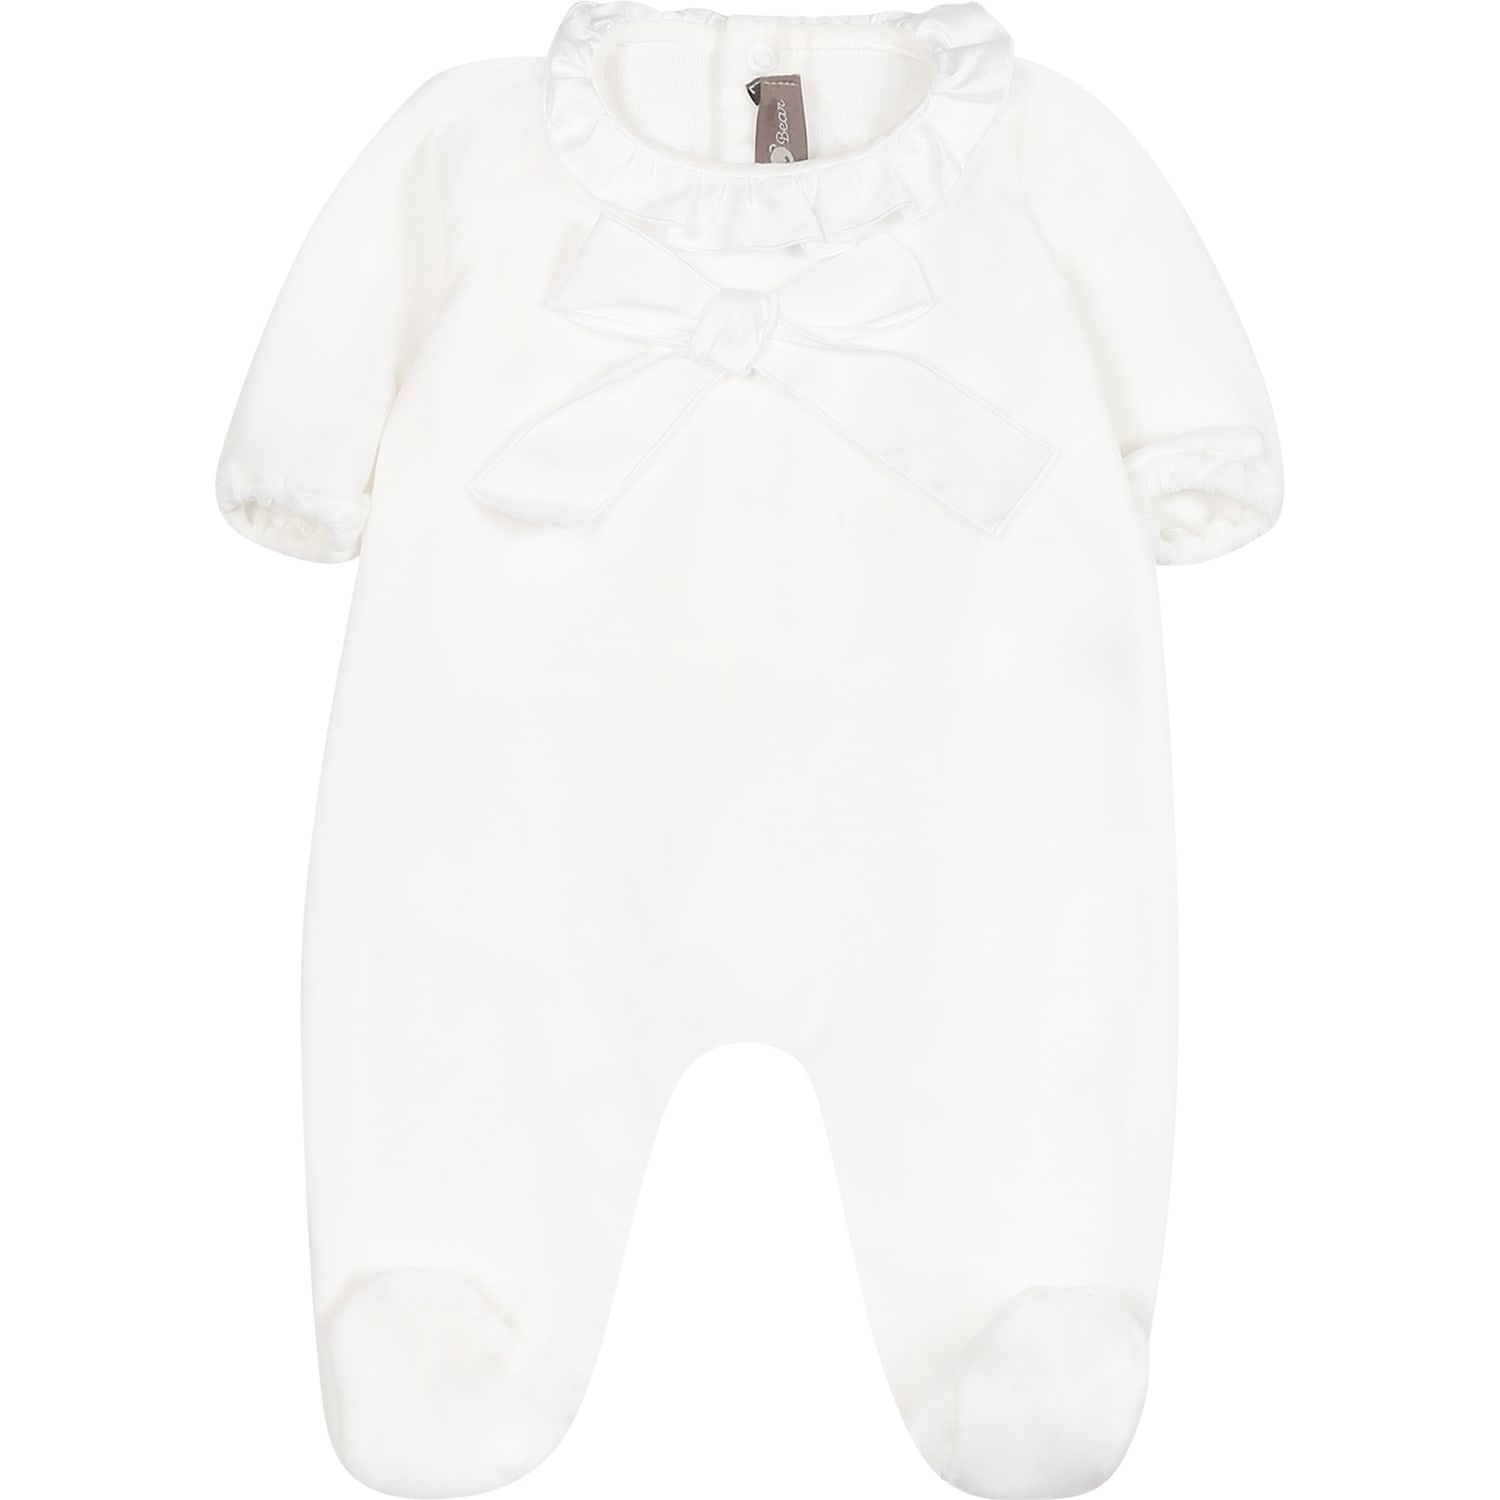 LITTLE BEAR WHITE BABYGROW FOR BABY GIRL